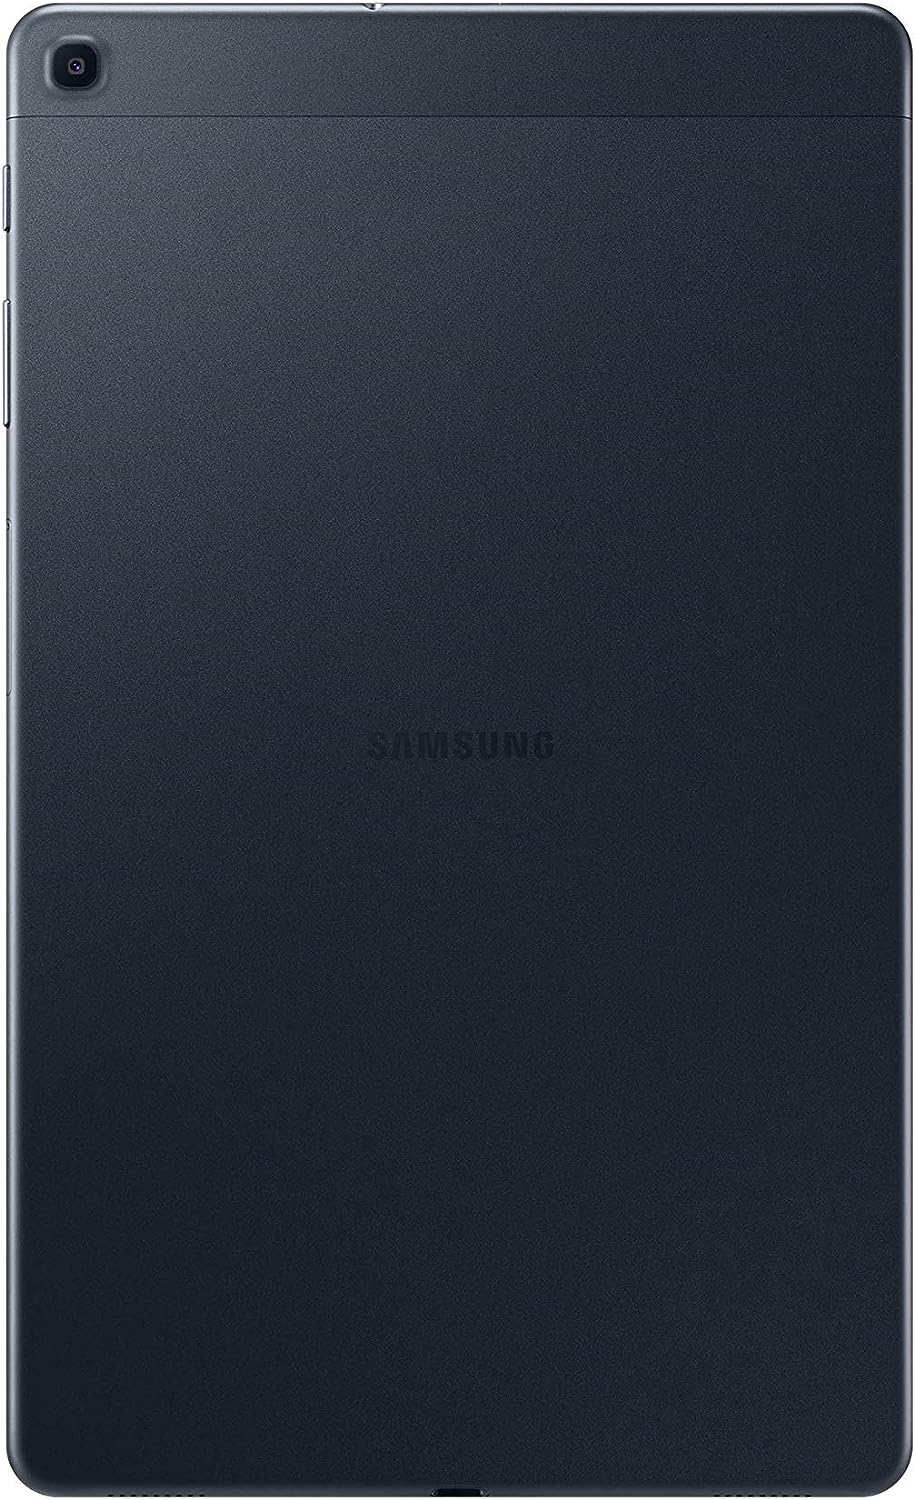 Samsung | Galaxy Tab A 10.1" Android 9.0 32 GB Wi-Fi - Black | SM-T510NZKAXAC